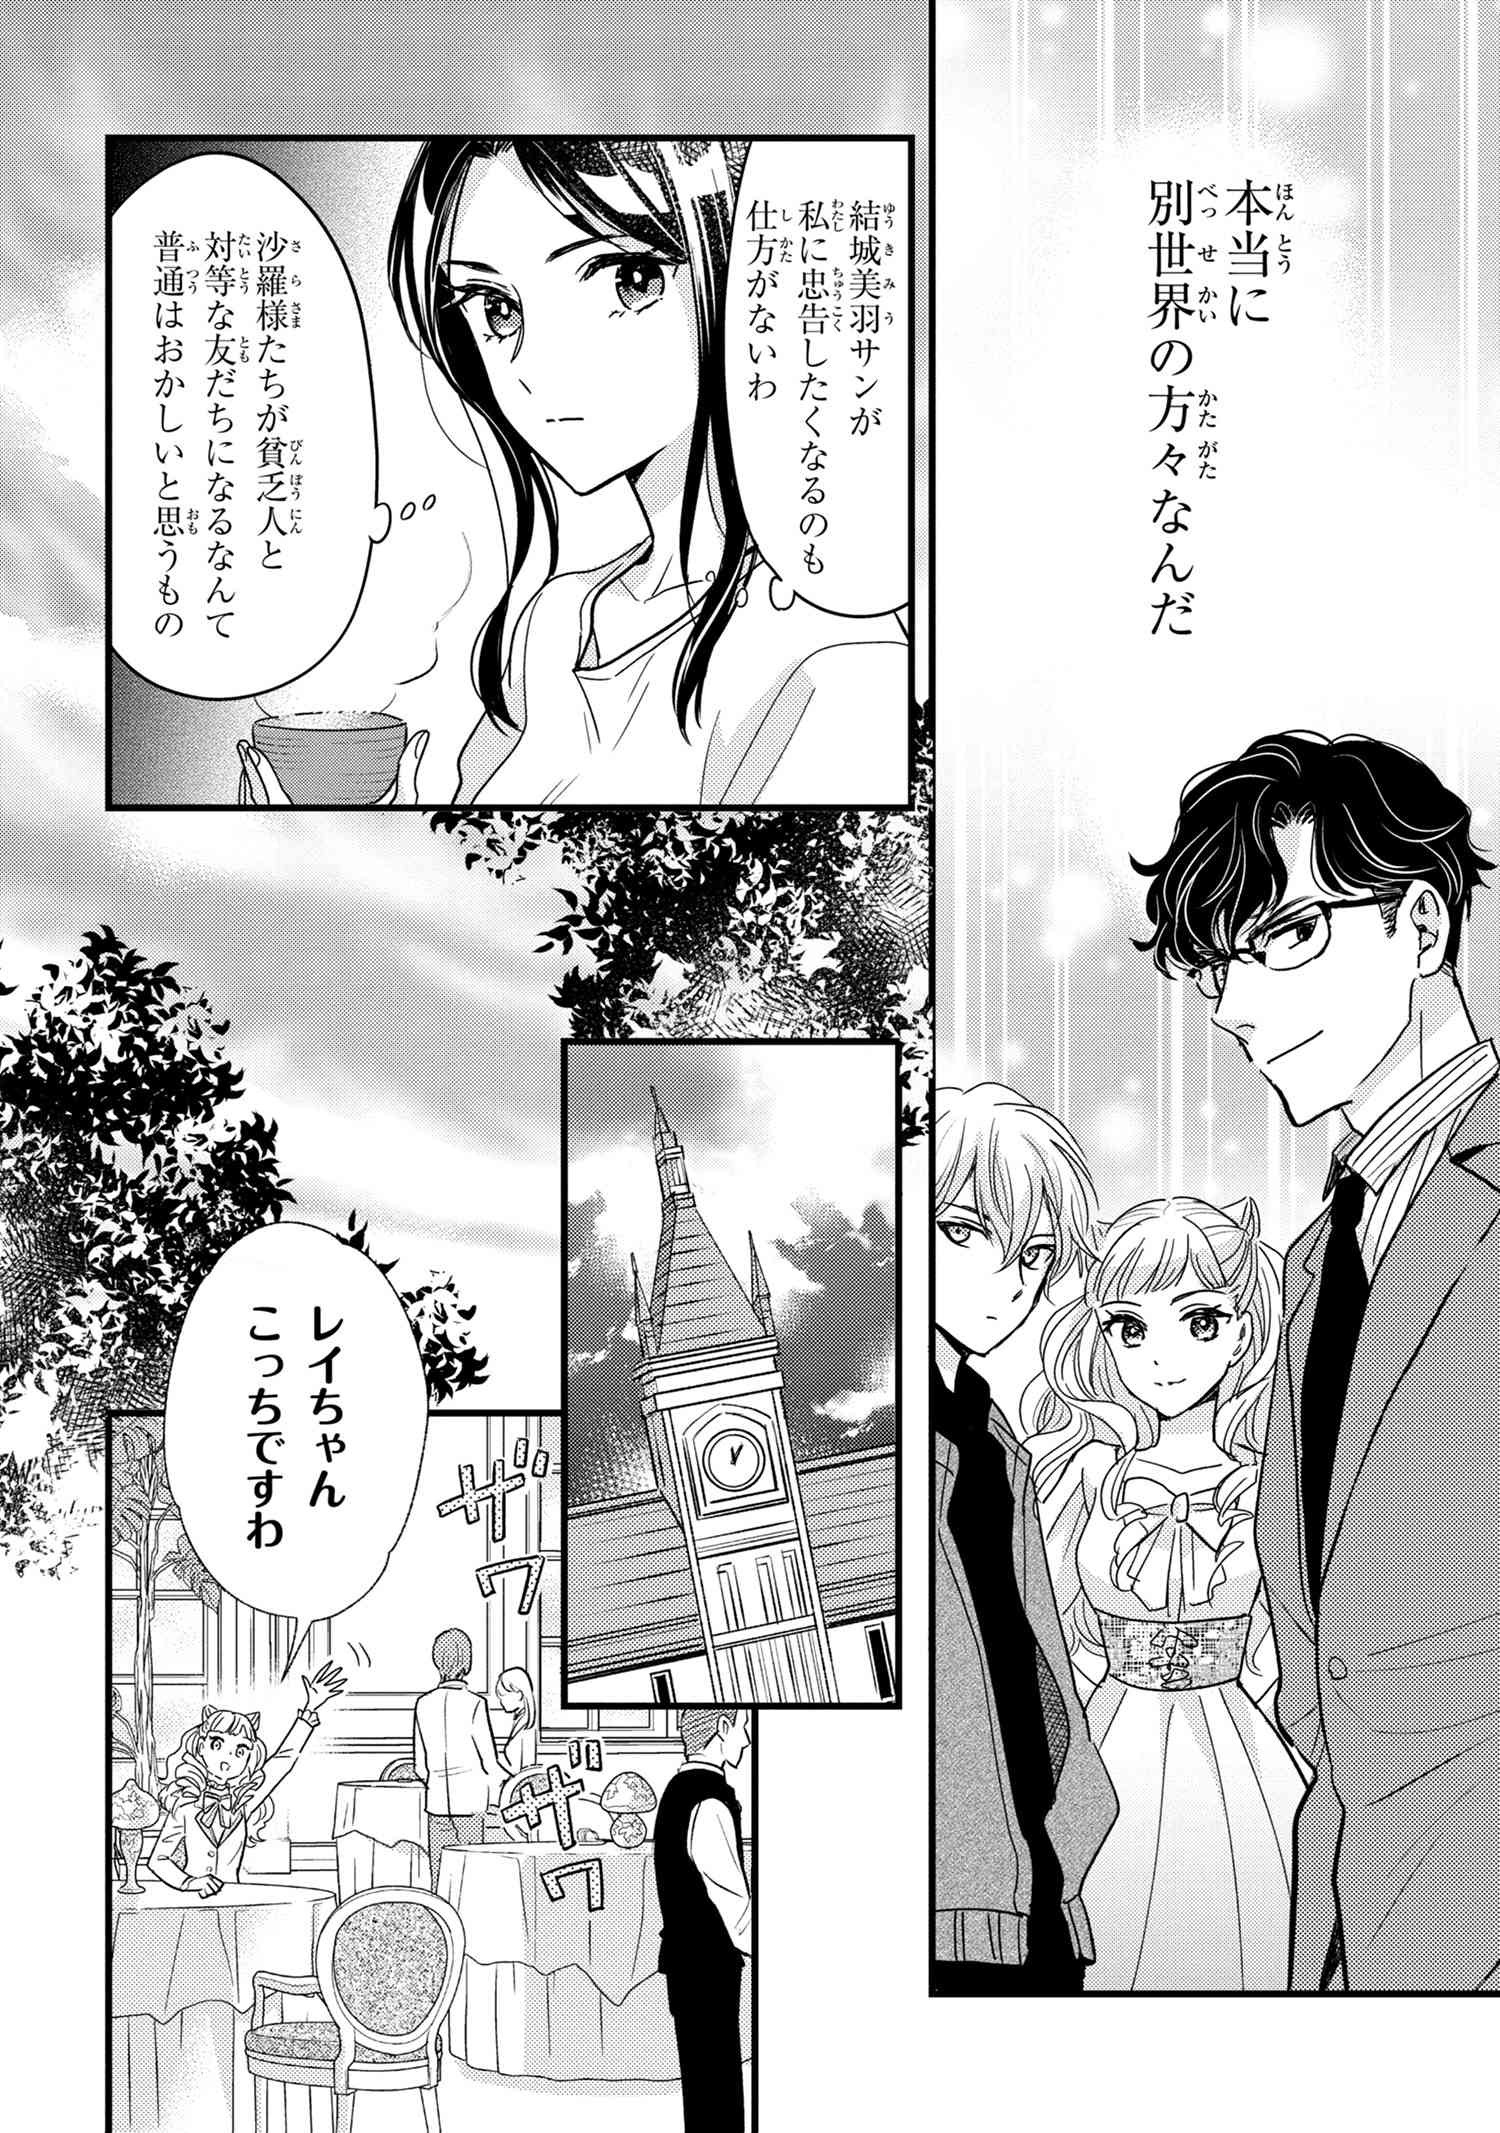 Reiko no Fuugi Akuyaku Reijou to Yobarete imasu ga, tada no Binbou Musume desu - Chapter 15-4 - Page 2